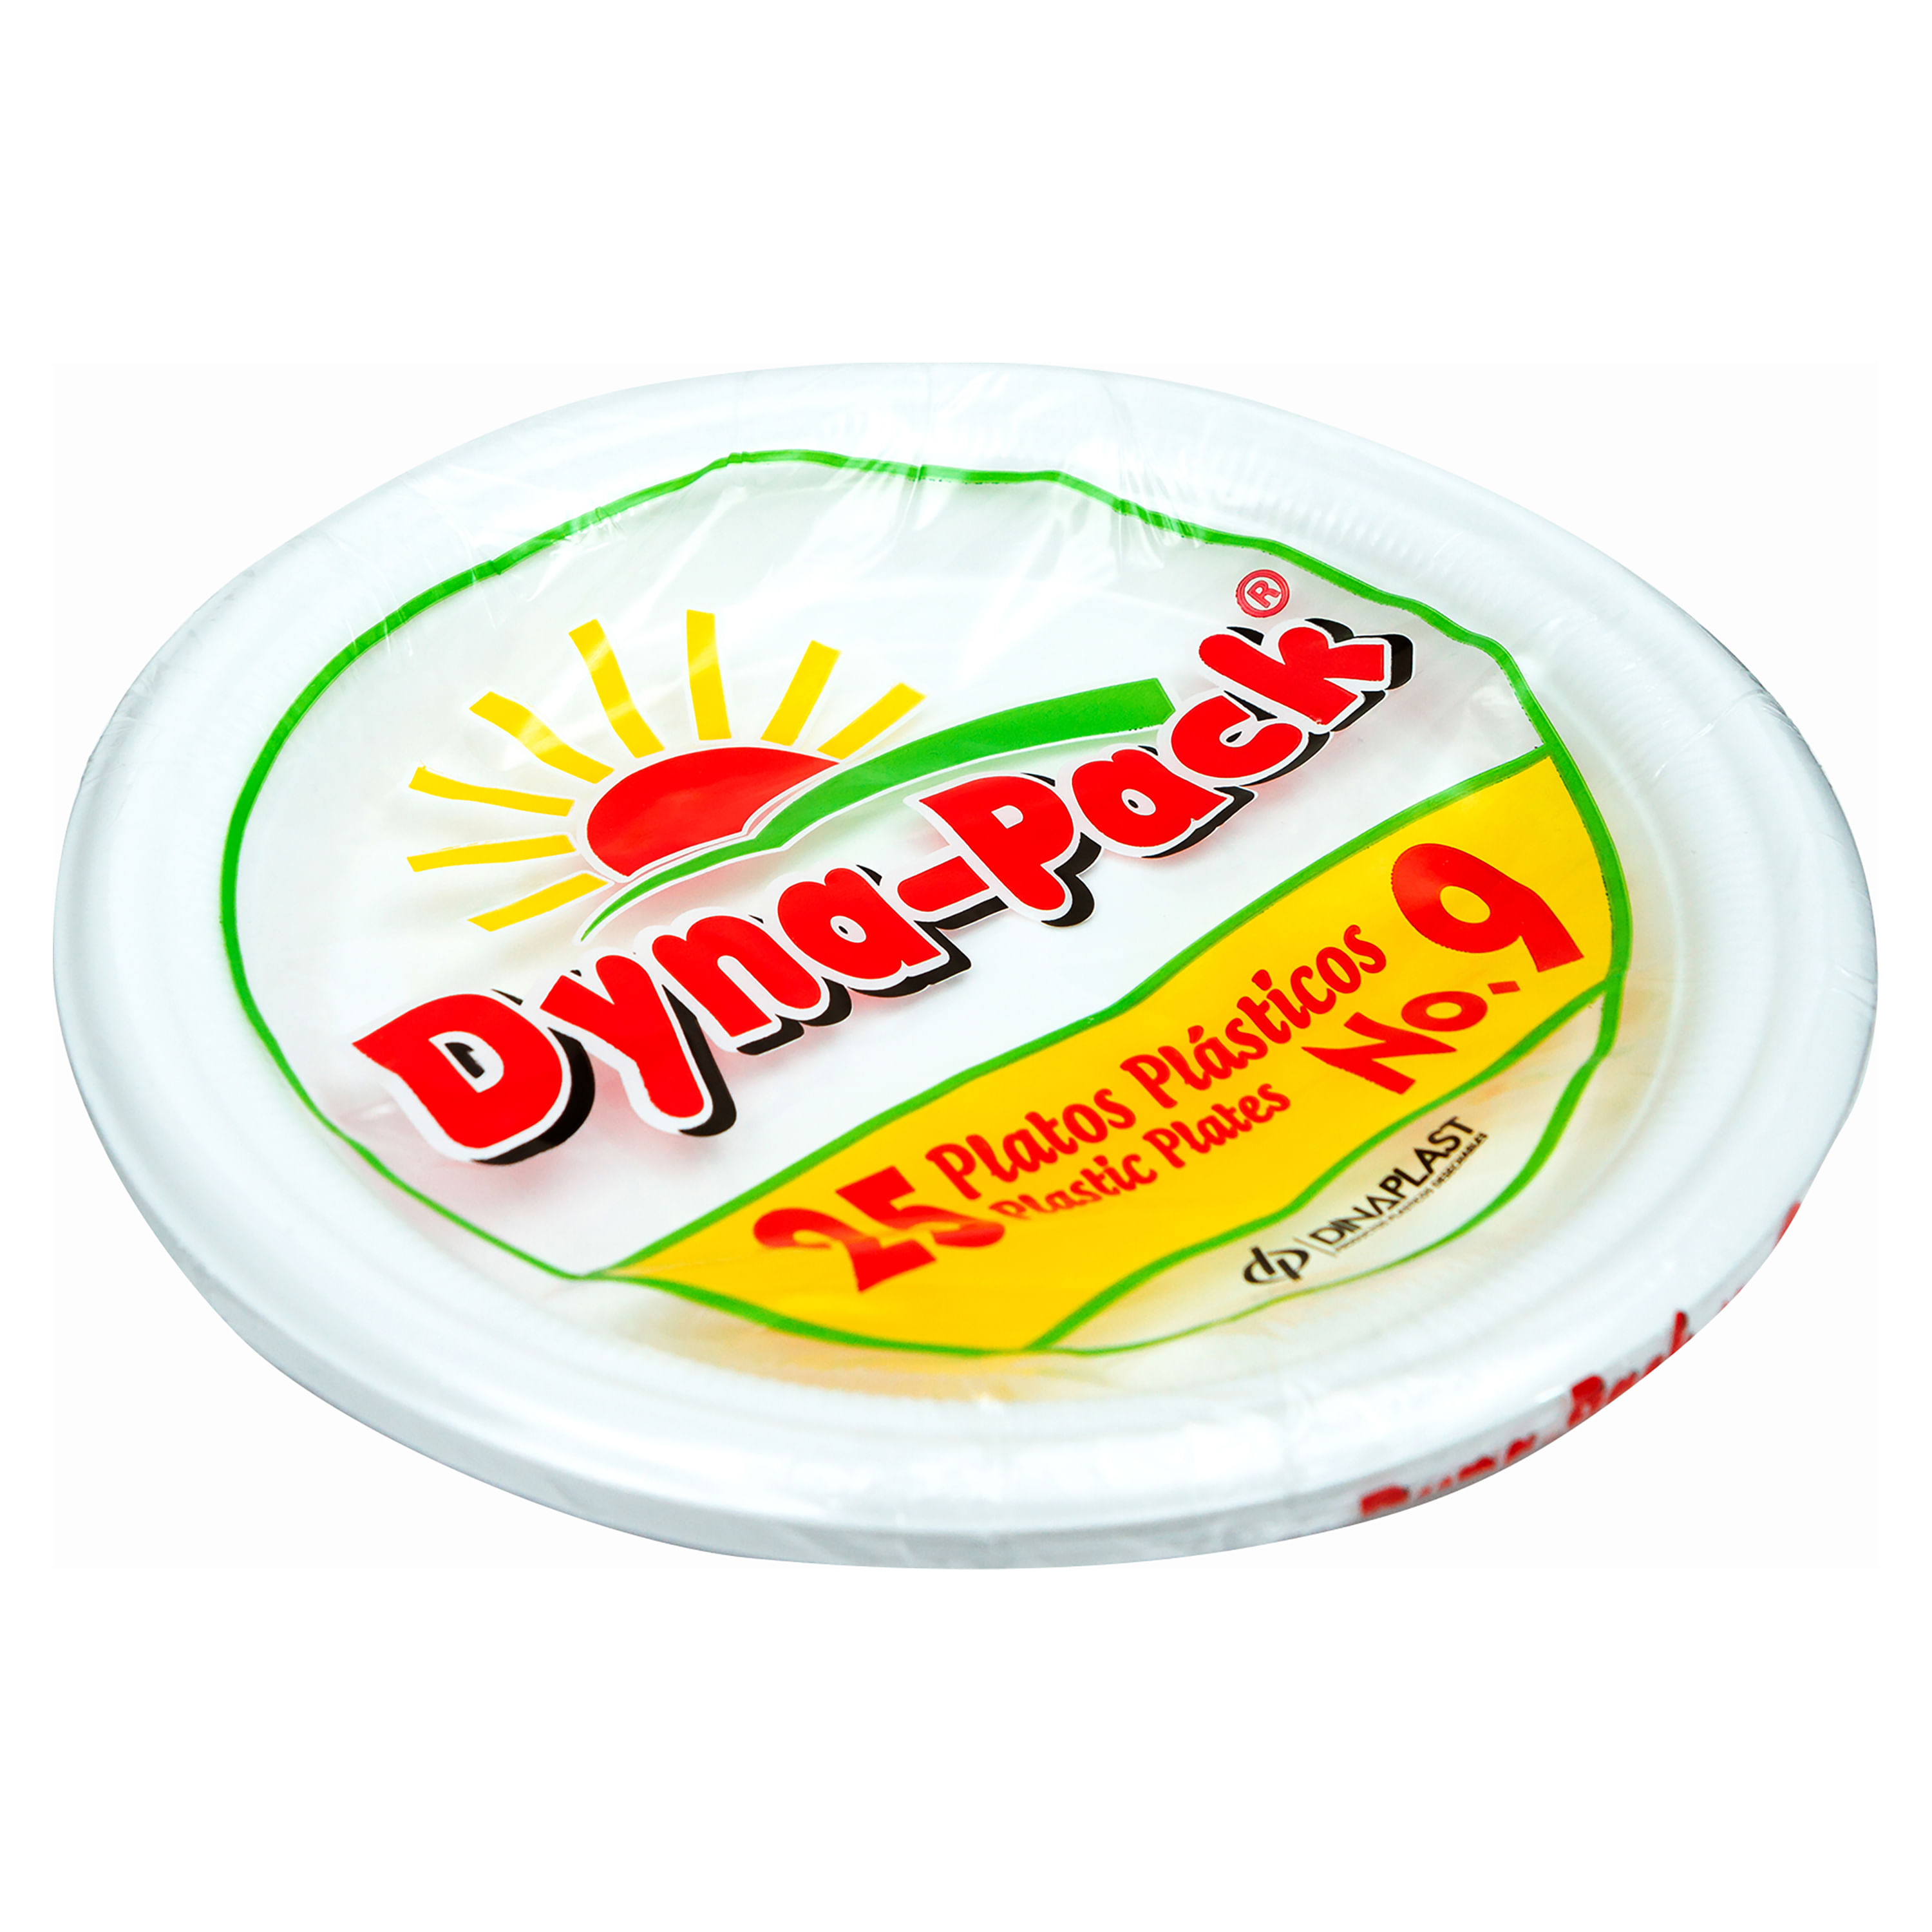 Platos dynapack desechable de plástico #9 25 un